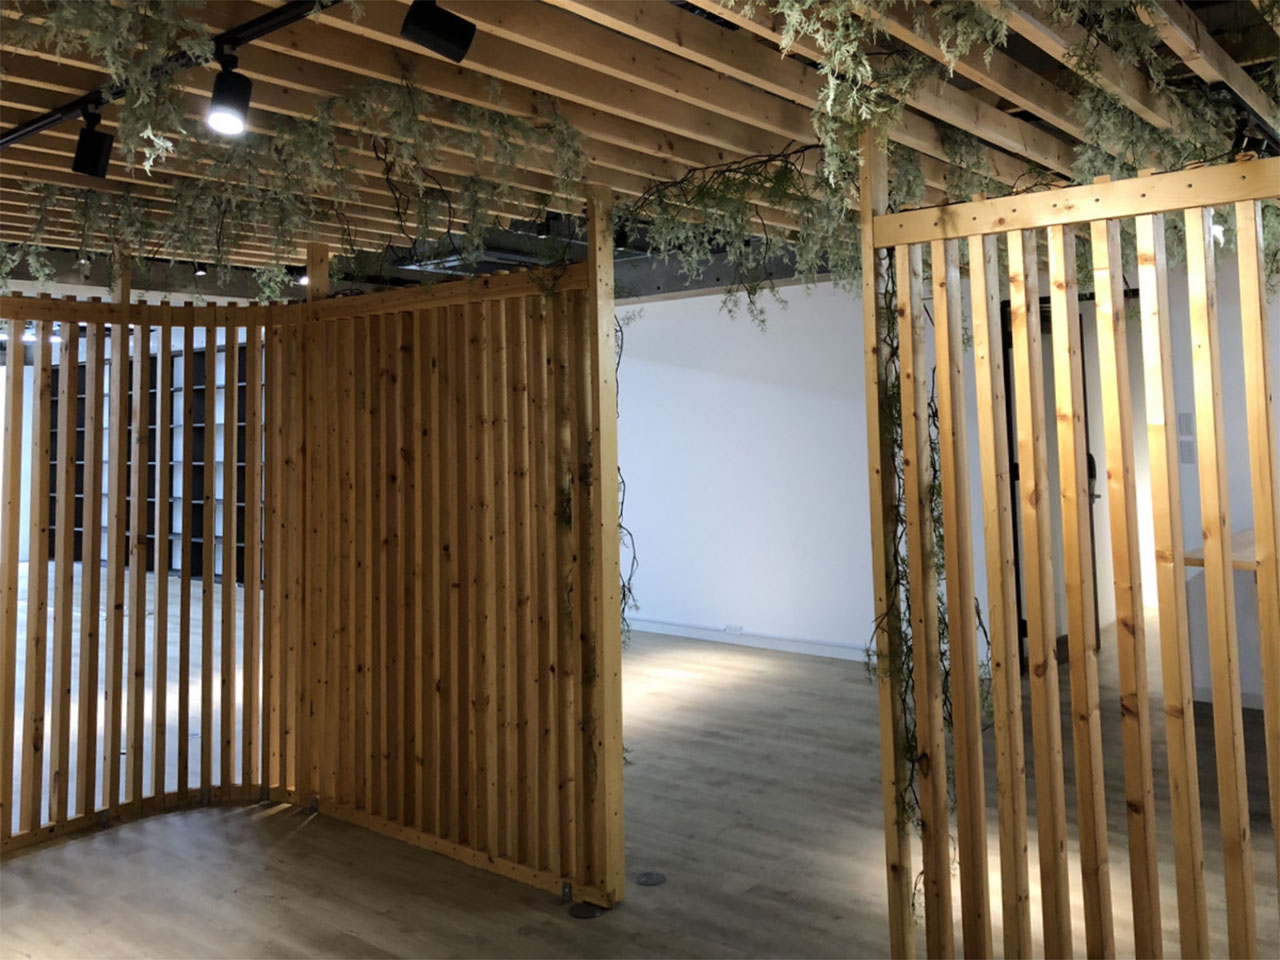 【居抜き】西区新町エリアで、木材を取り入れたリラックス効果の空間がある居抜きオフィス